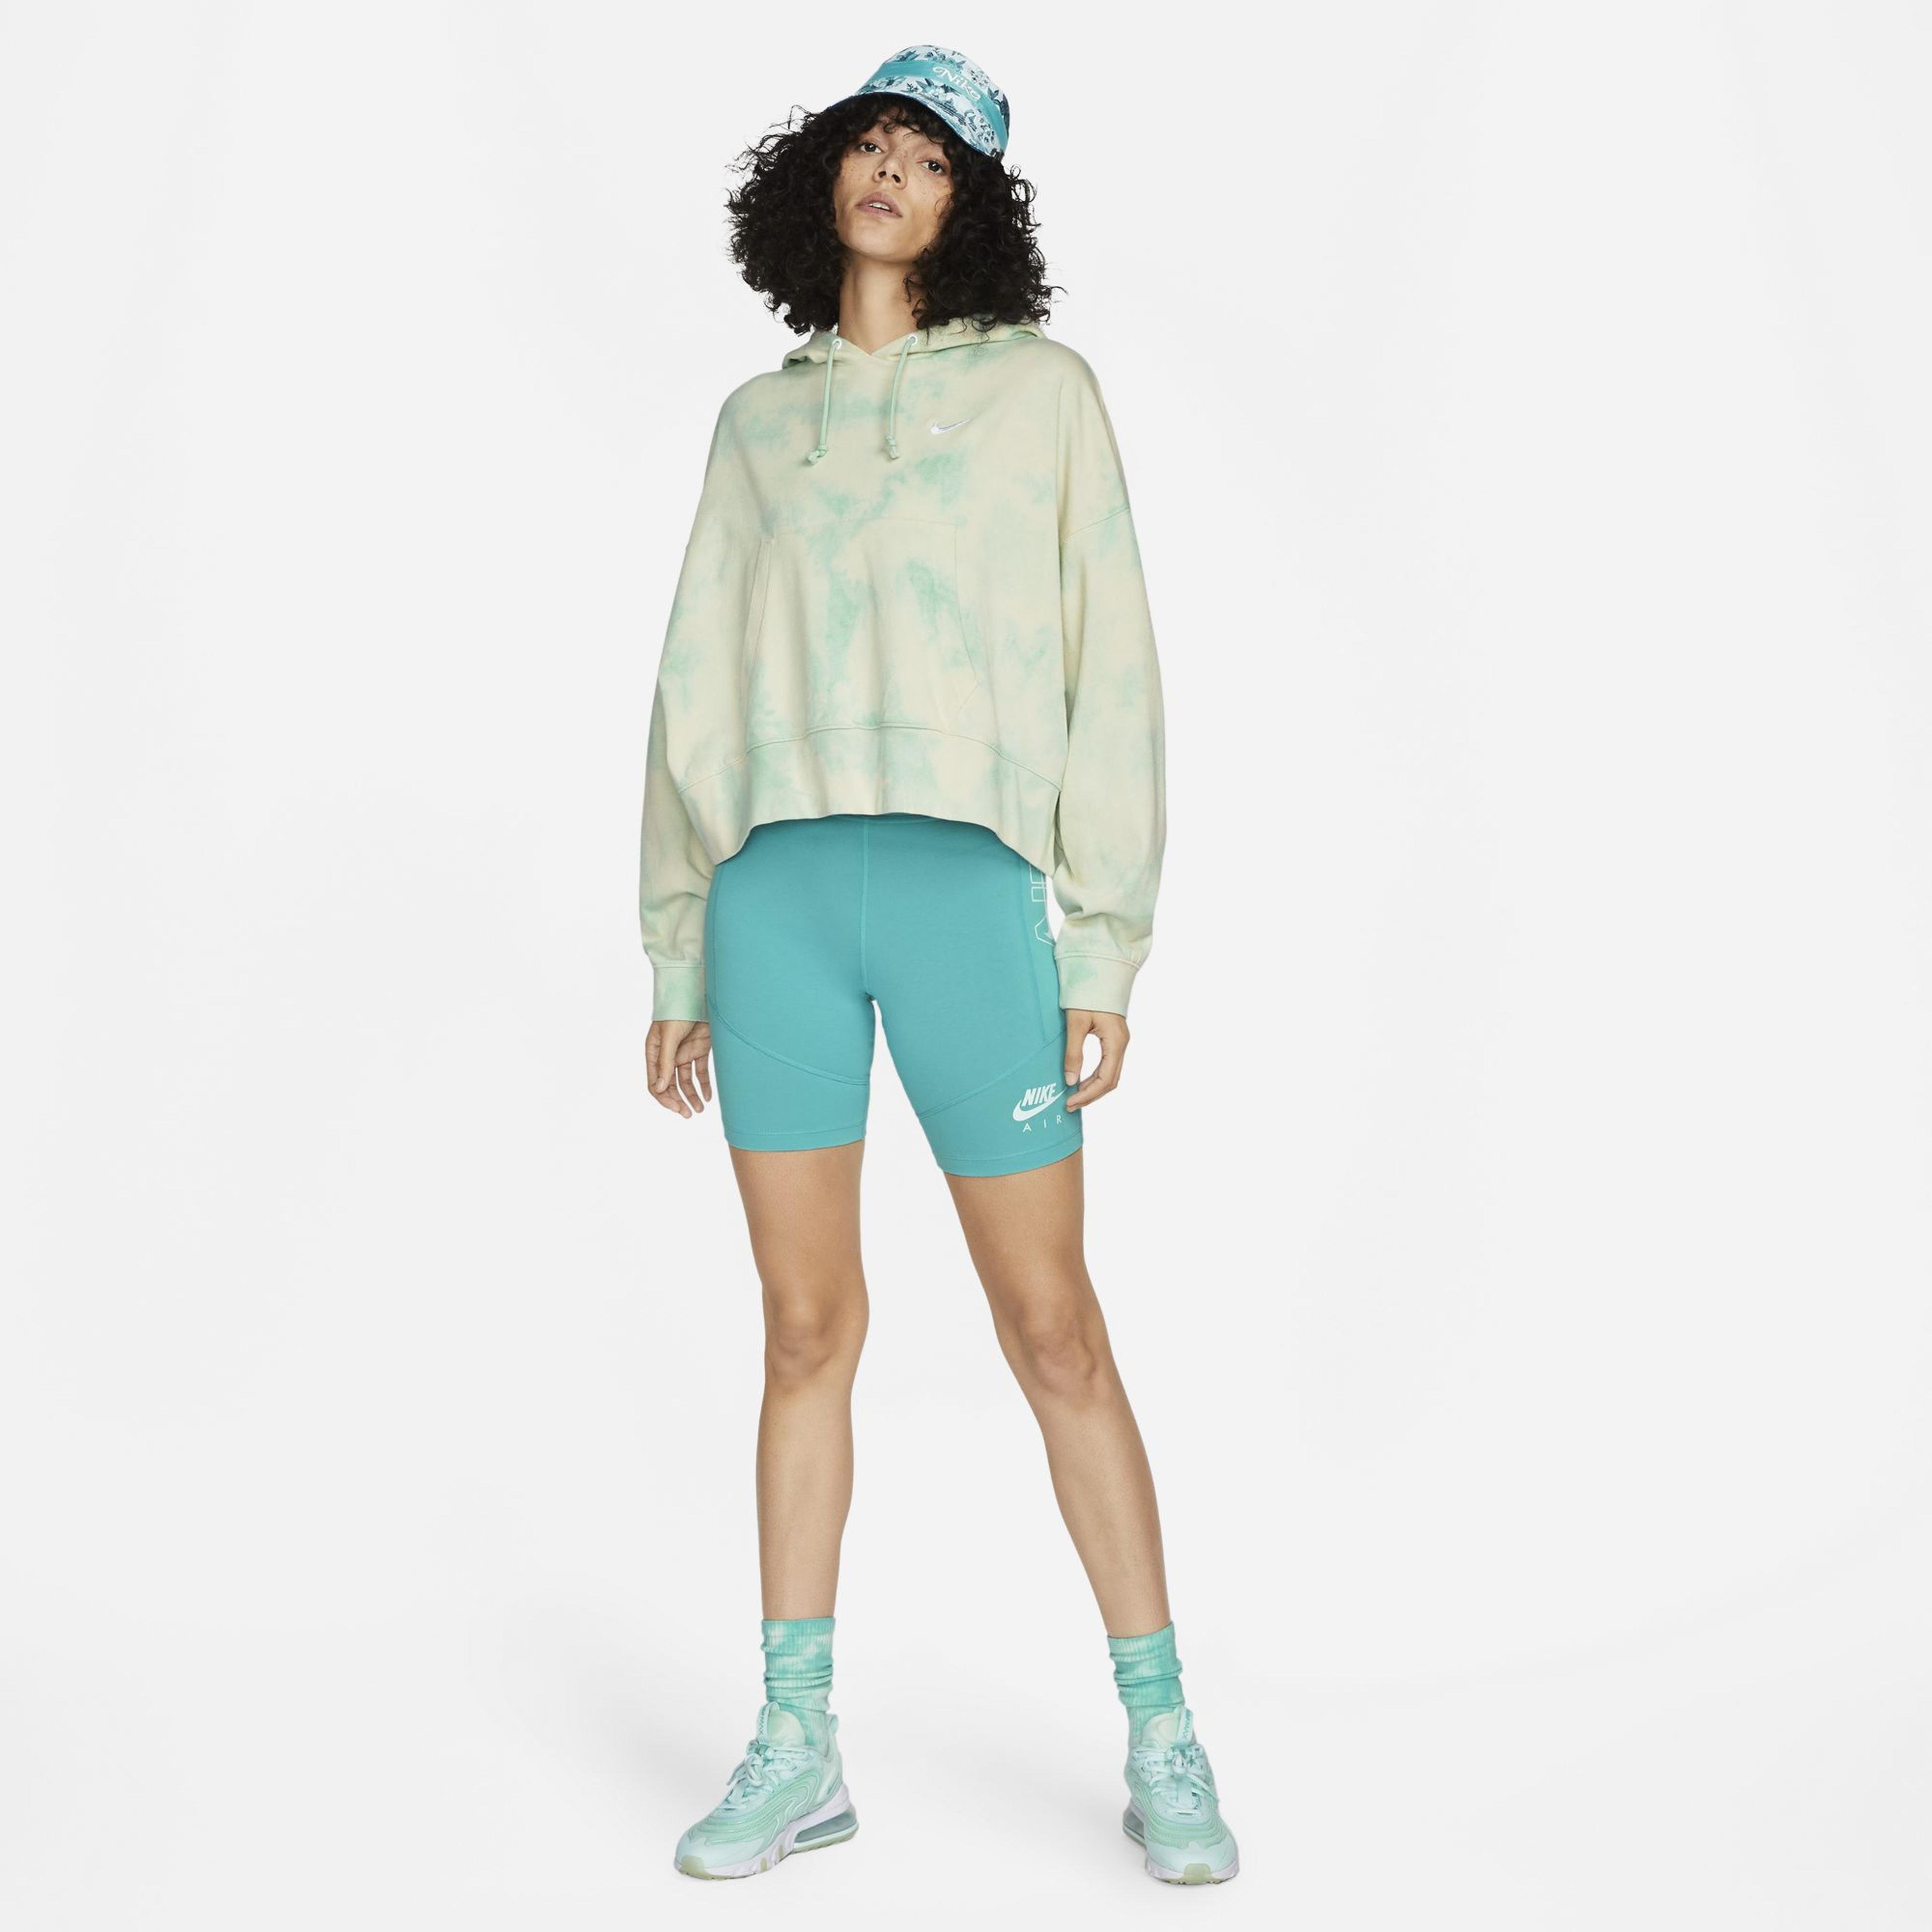 Nike Sportswear Kadın Yeşil Sweatshirt